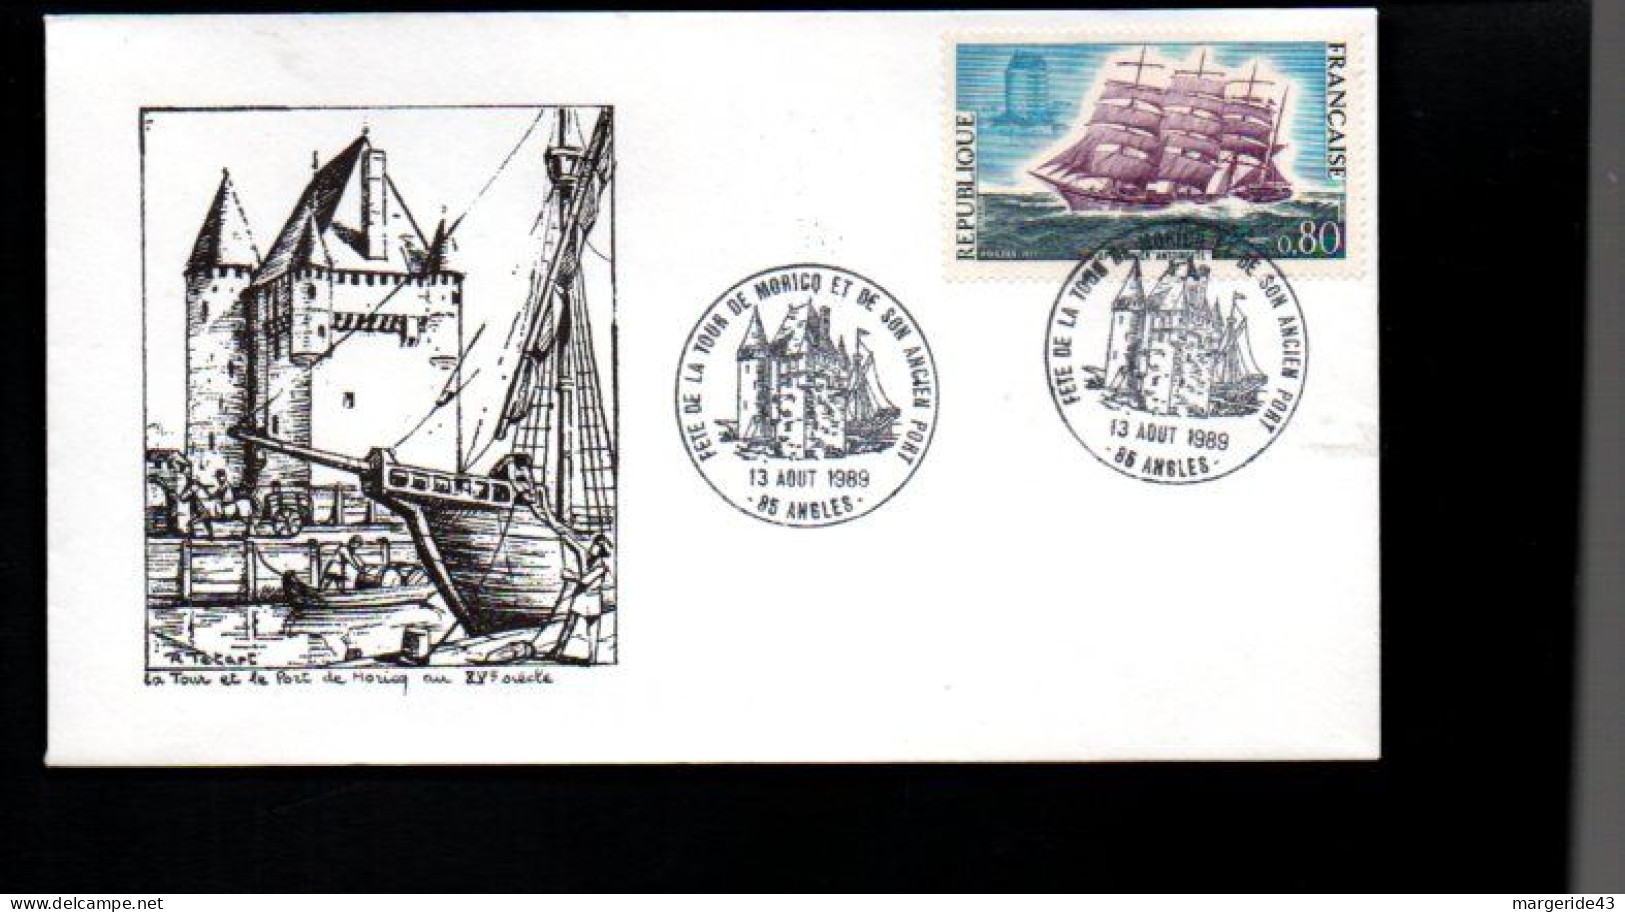 FETE DE LA TOUR DE MORICQ ET DE SON ANCIEN PORT à ANGLES VENDEE 1989 - Commemorative Postmarks